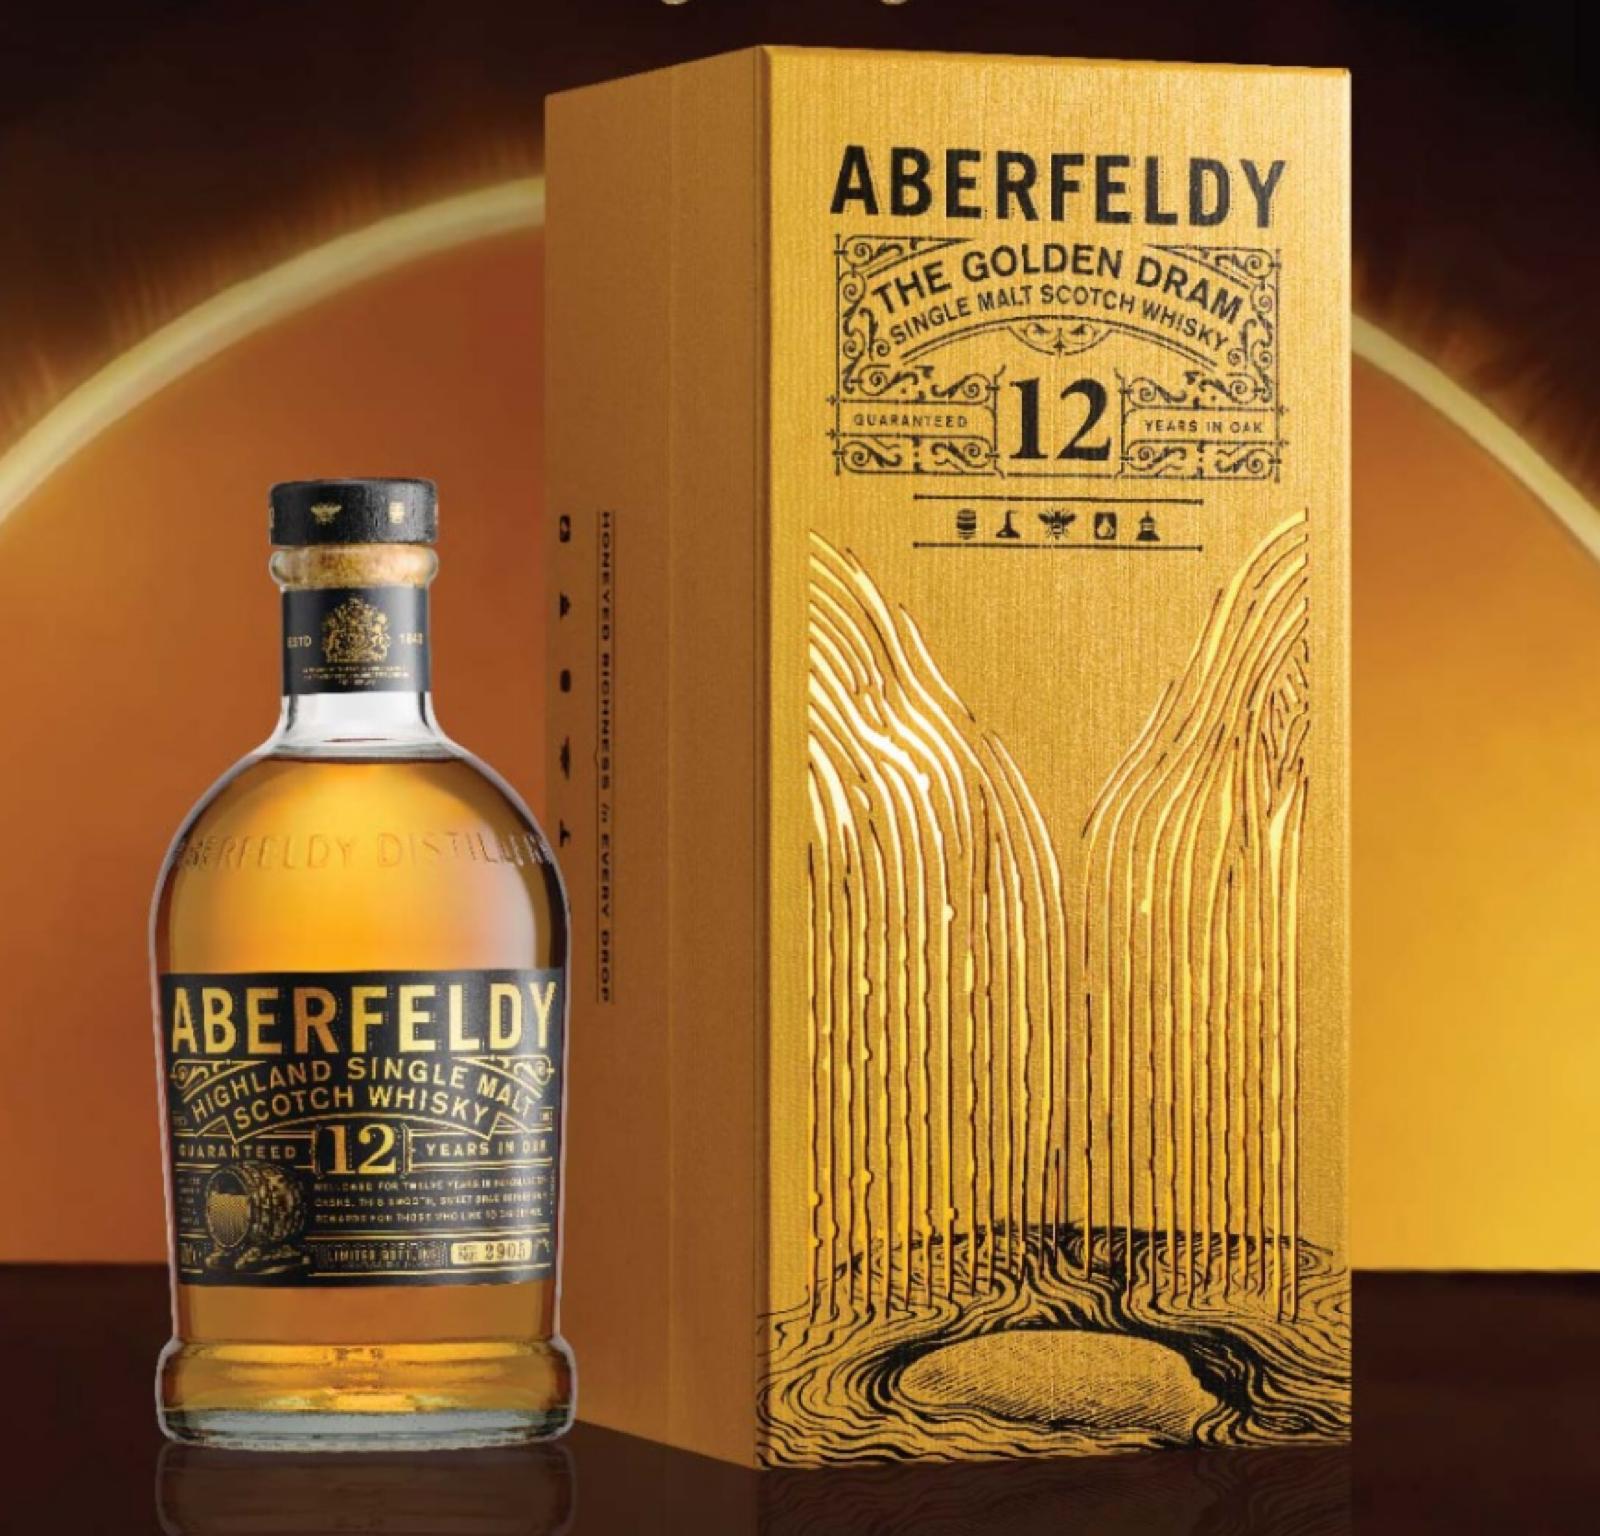 艾柏迪 Aberfeldy 12 Year Old Scotch Whisky with Gift Box (限量透光禮盒)